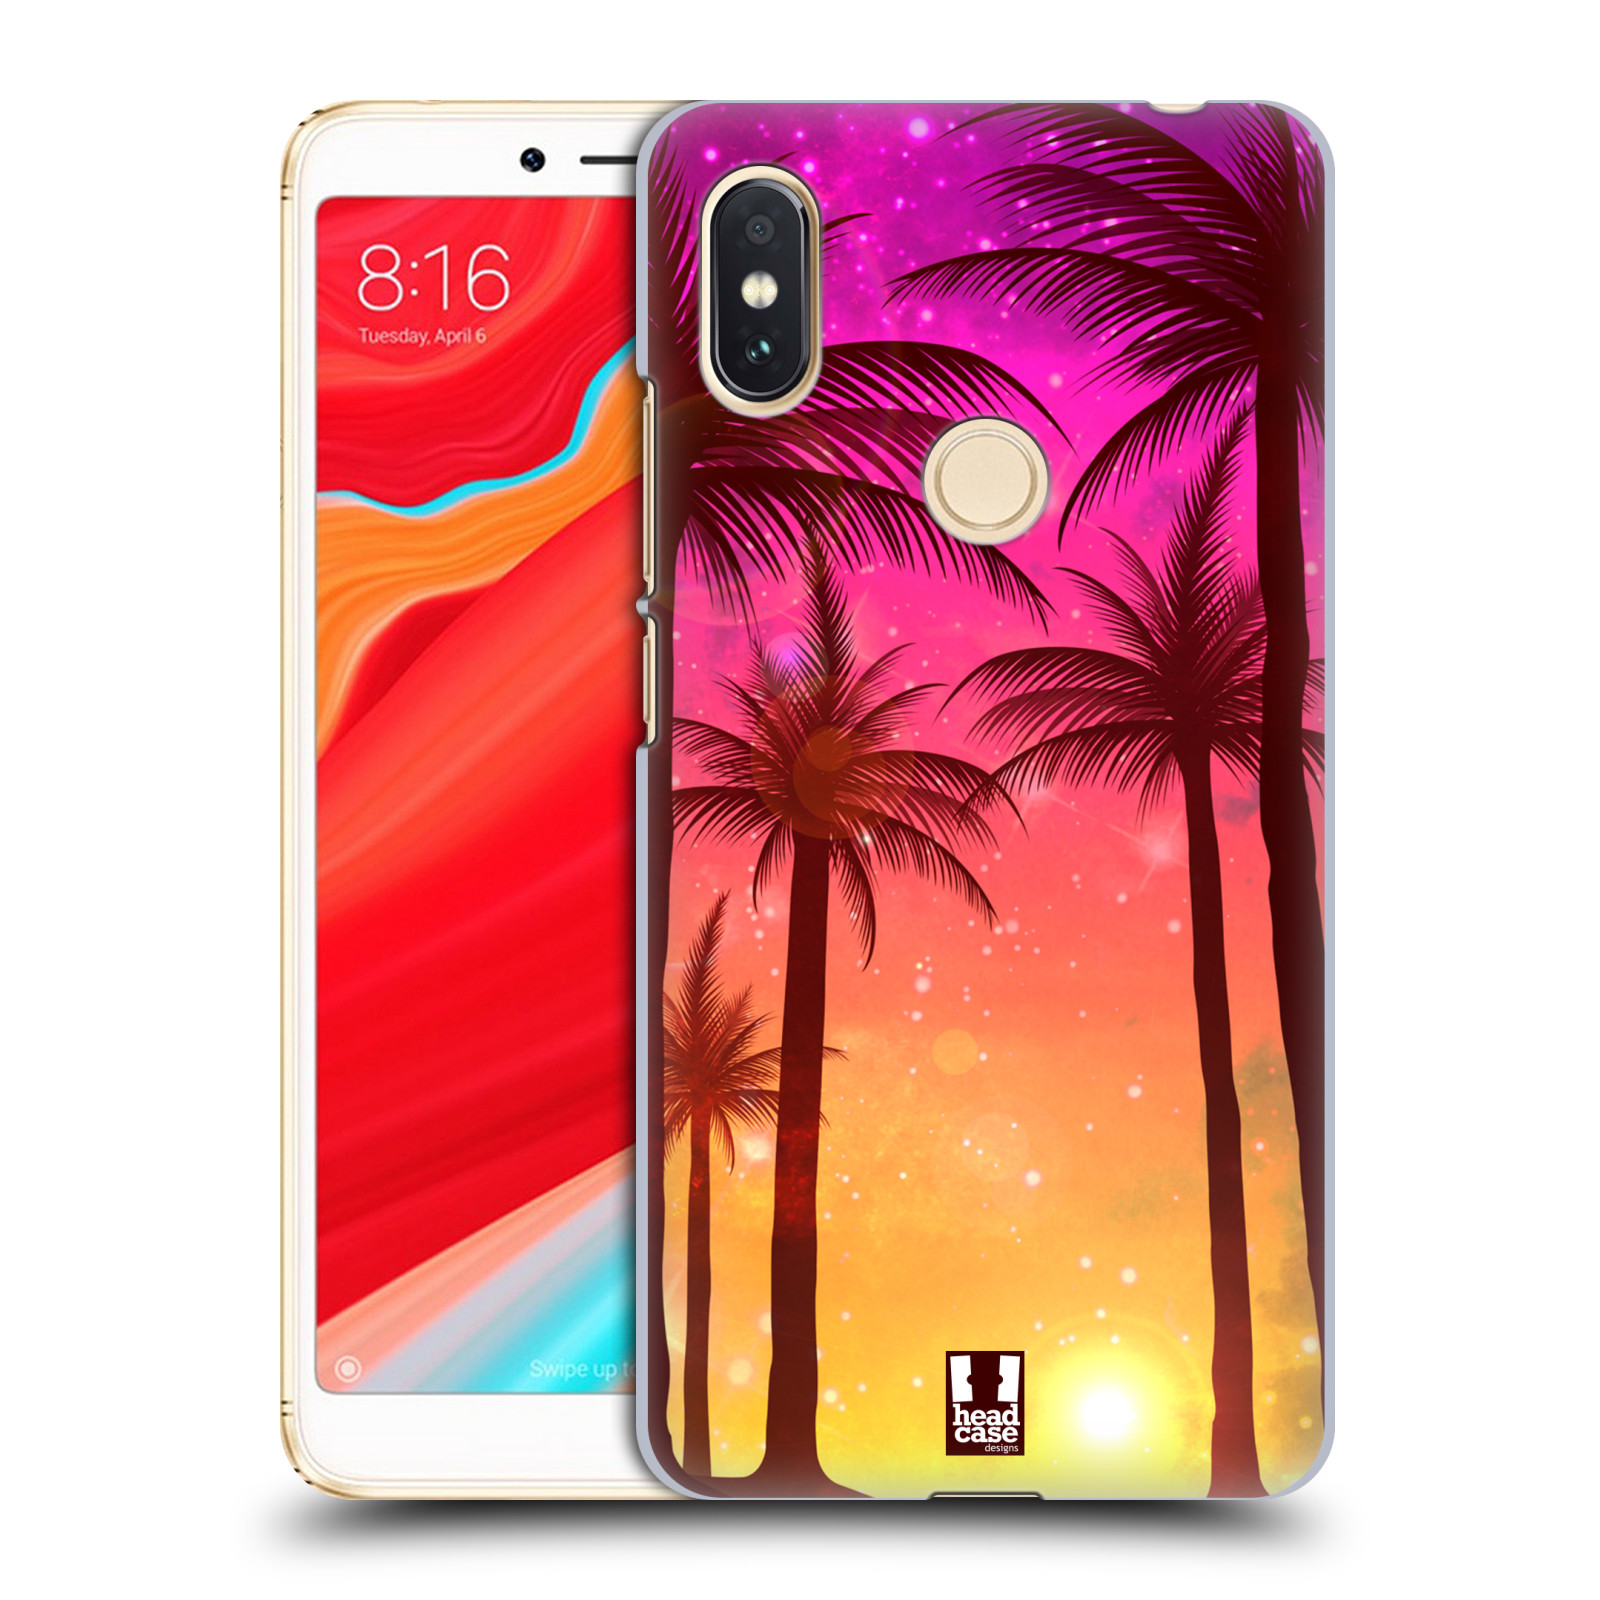 HEAD CASE plastový obal na mobil Xiaomi Redmi S2 vzor Kreslený motiv silueta moře a palmy RŮŽOVÁ